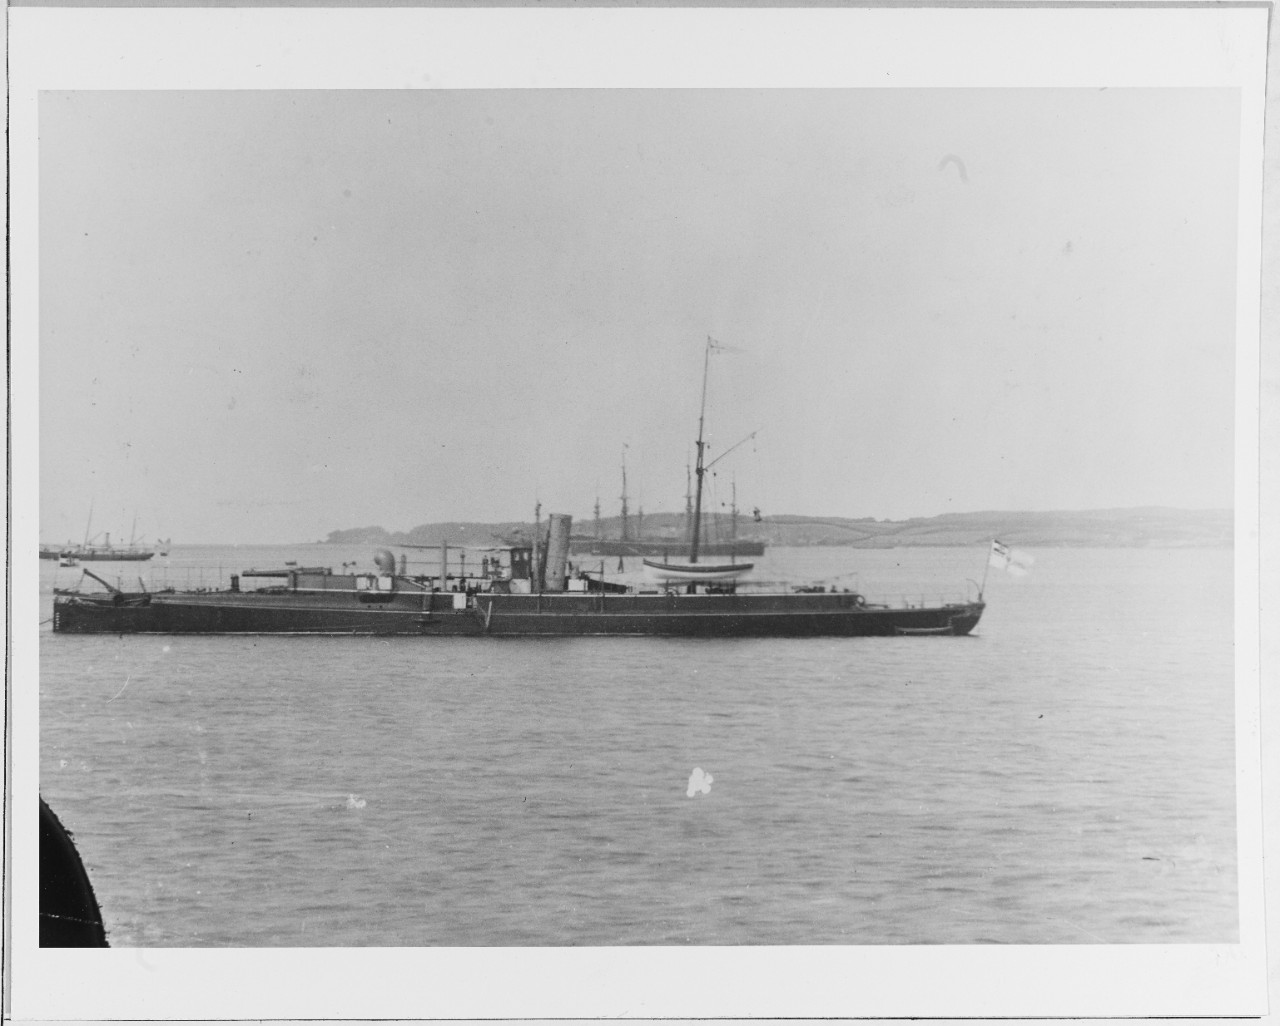 SMS BRUMMER (German armored gunboat, 1884)